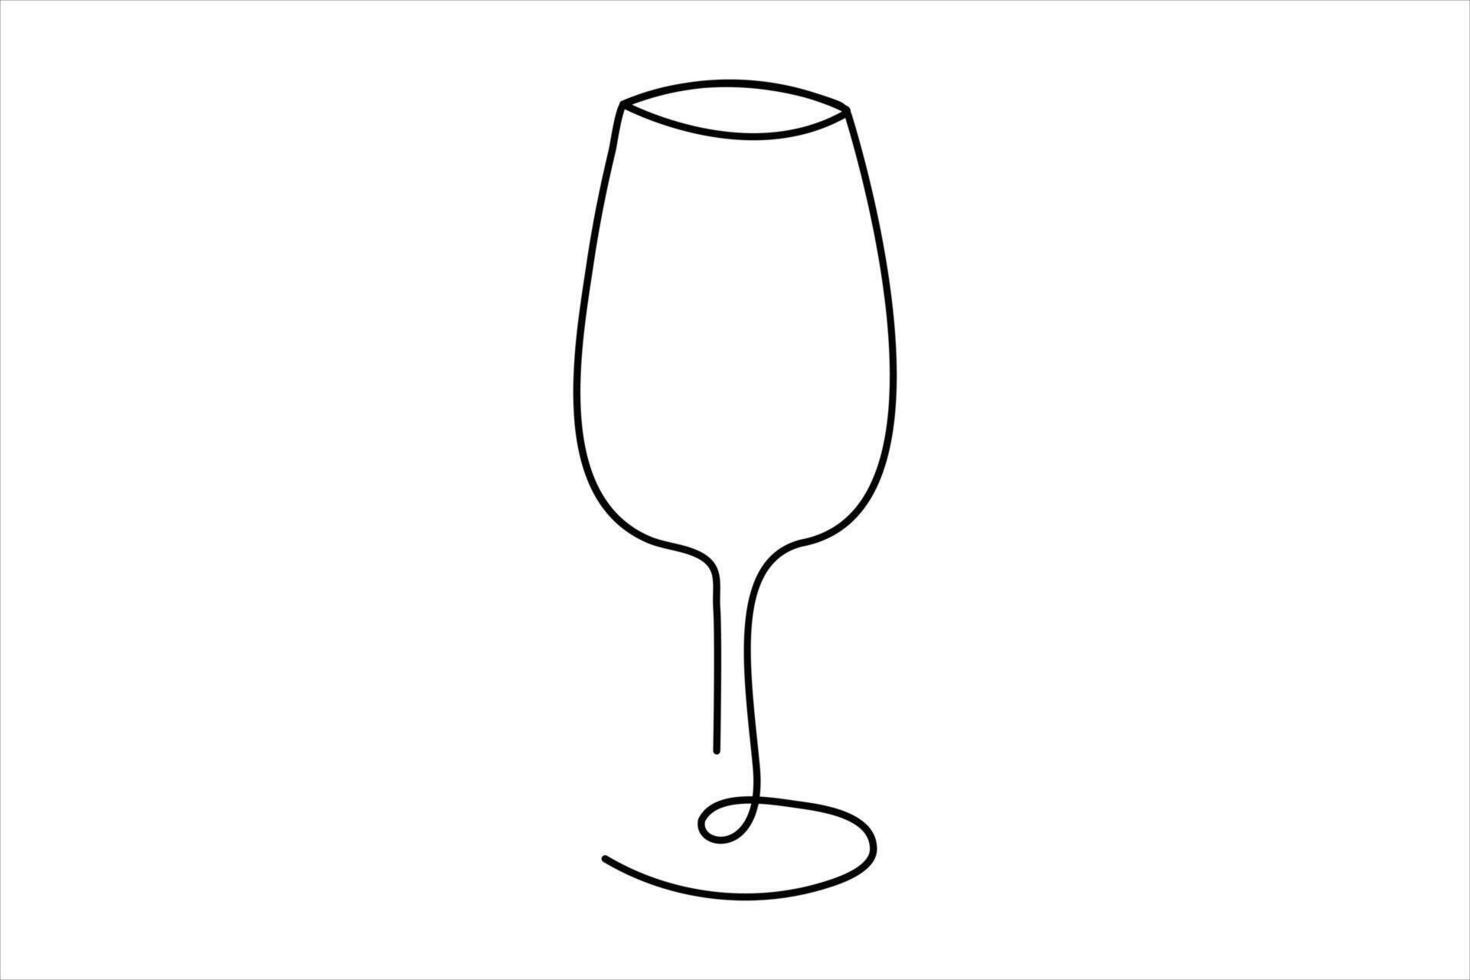 continu Célibataire ligne du vin en buvant verre en ligne continu Célibataire ligne art. vecteur